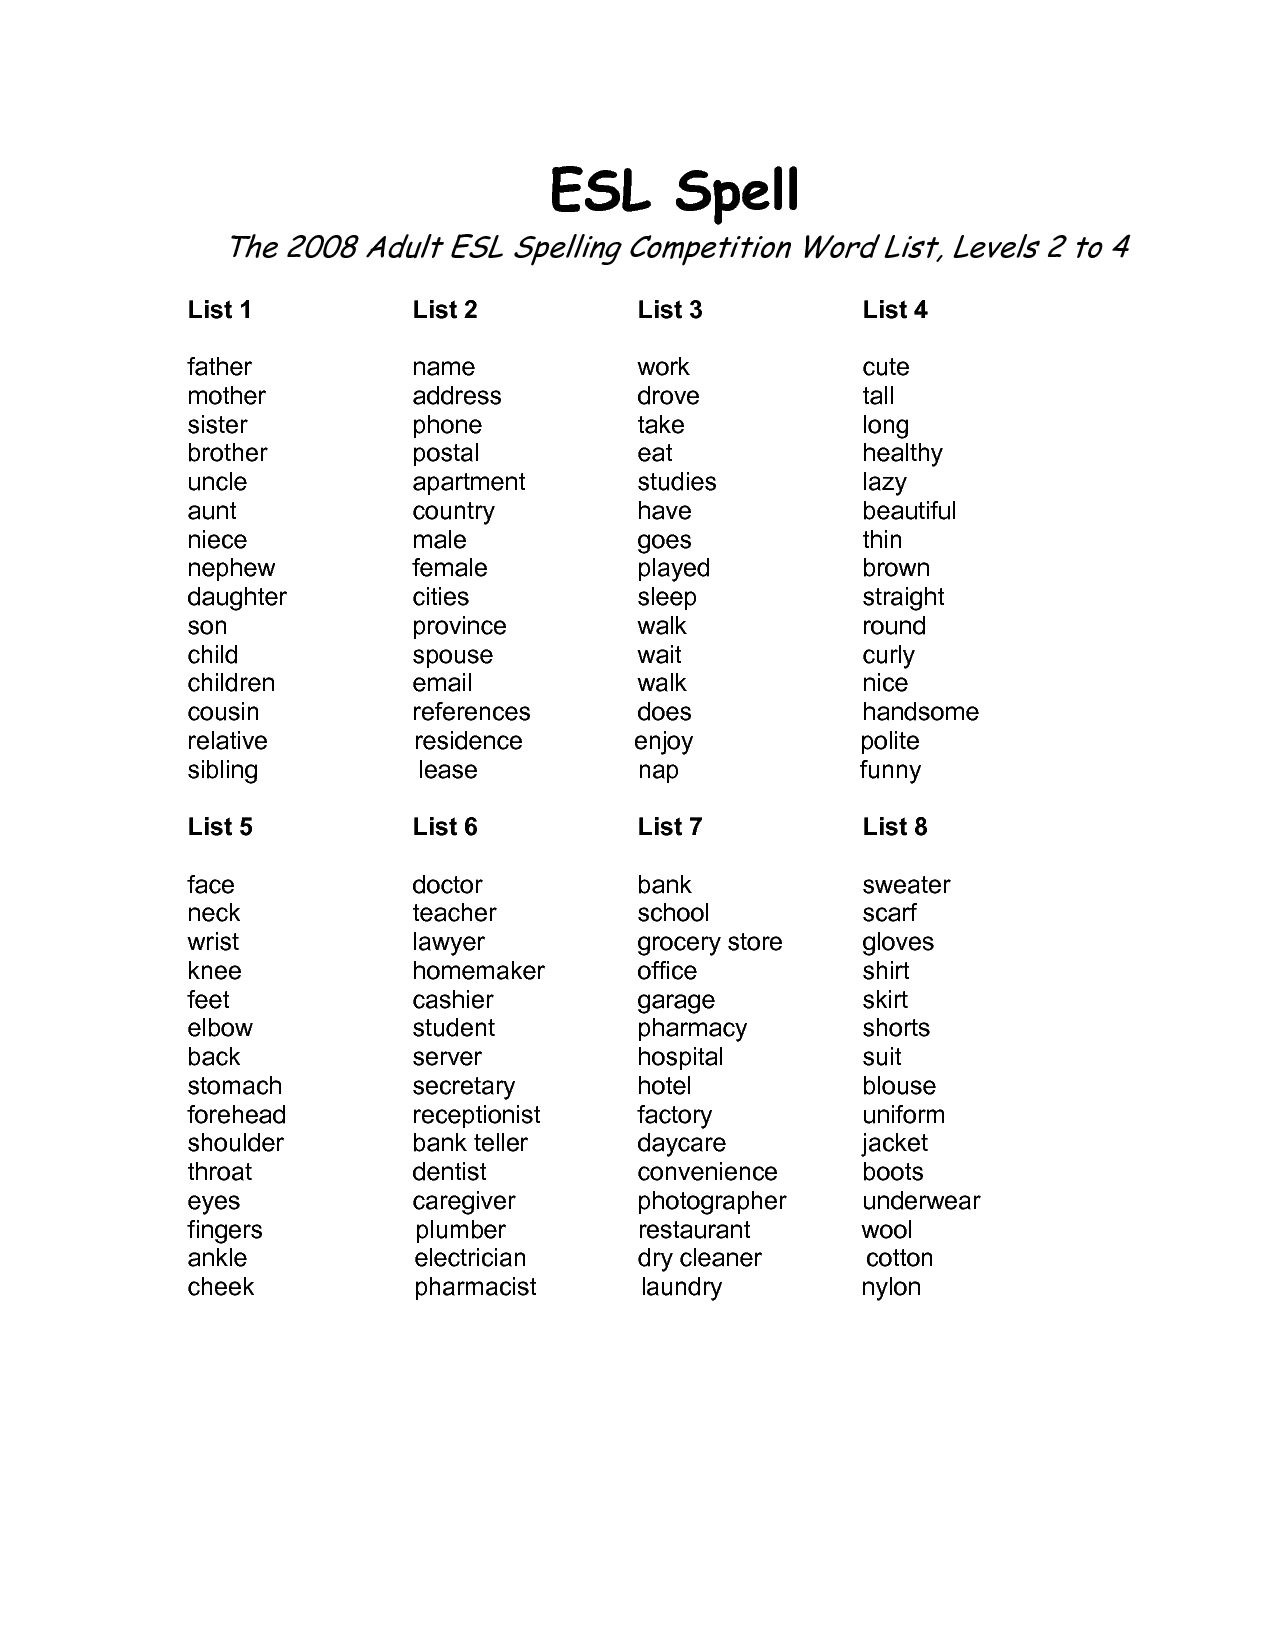 Adult Spelling Word List Image